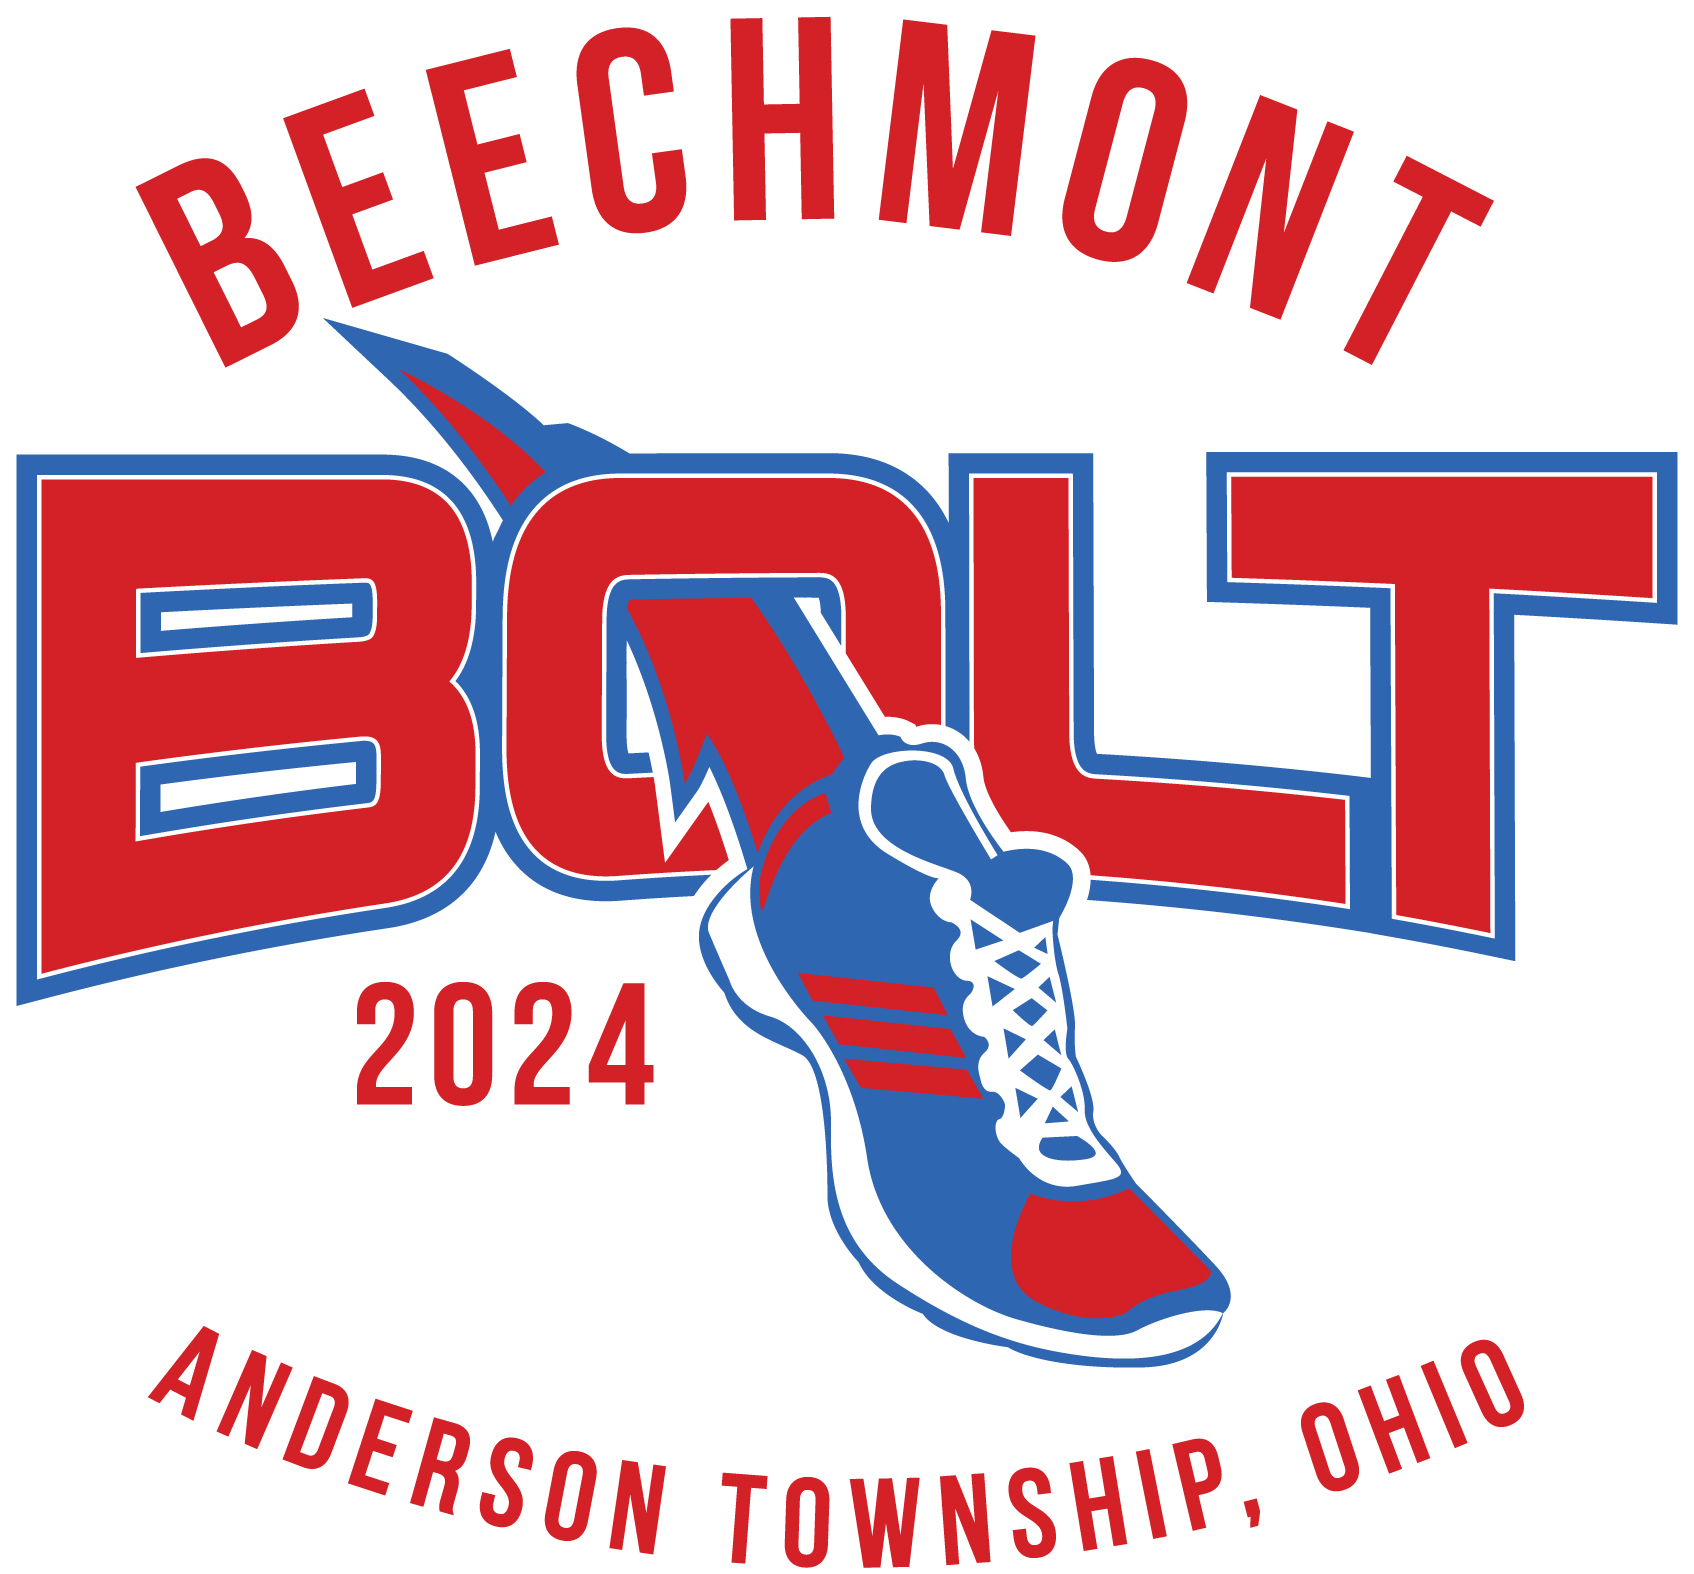 Beechmont Bolt logo on RaceRaves